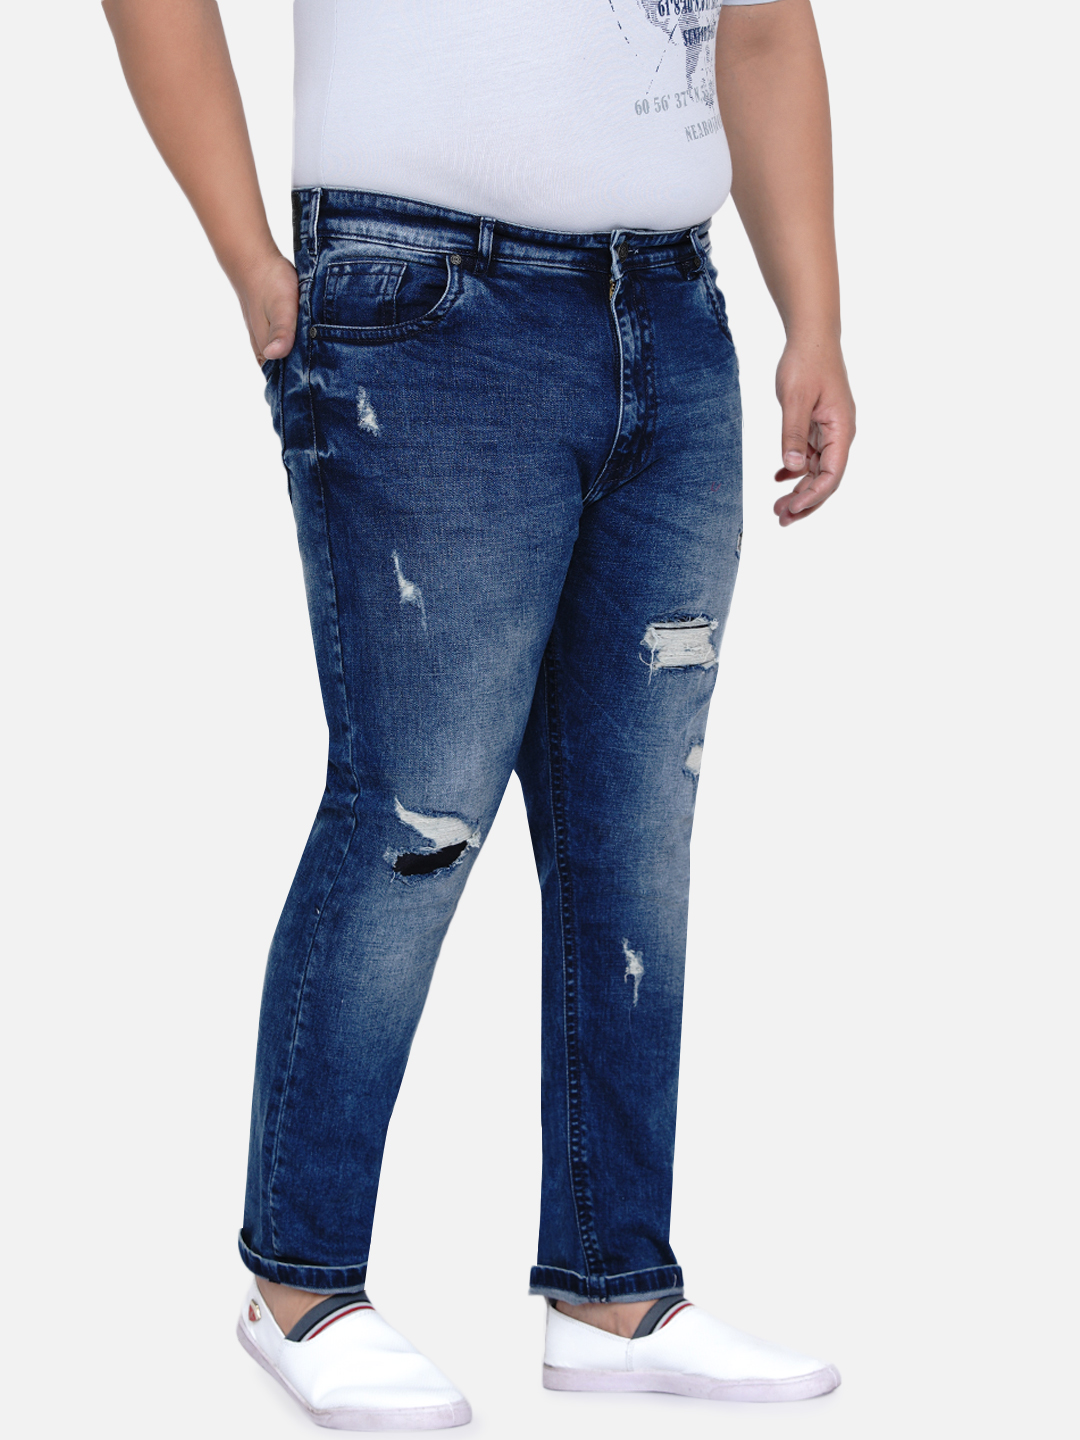 bottomwear/jeans/JPJ12185/jpj12185-4.jpg